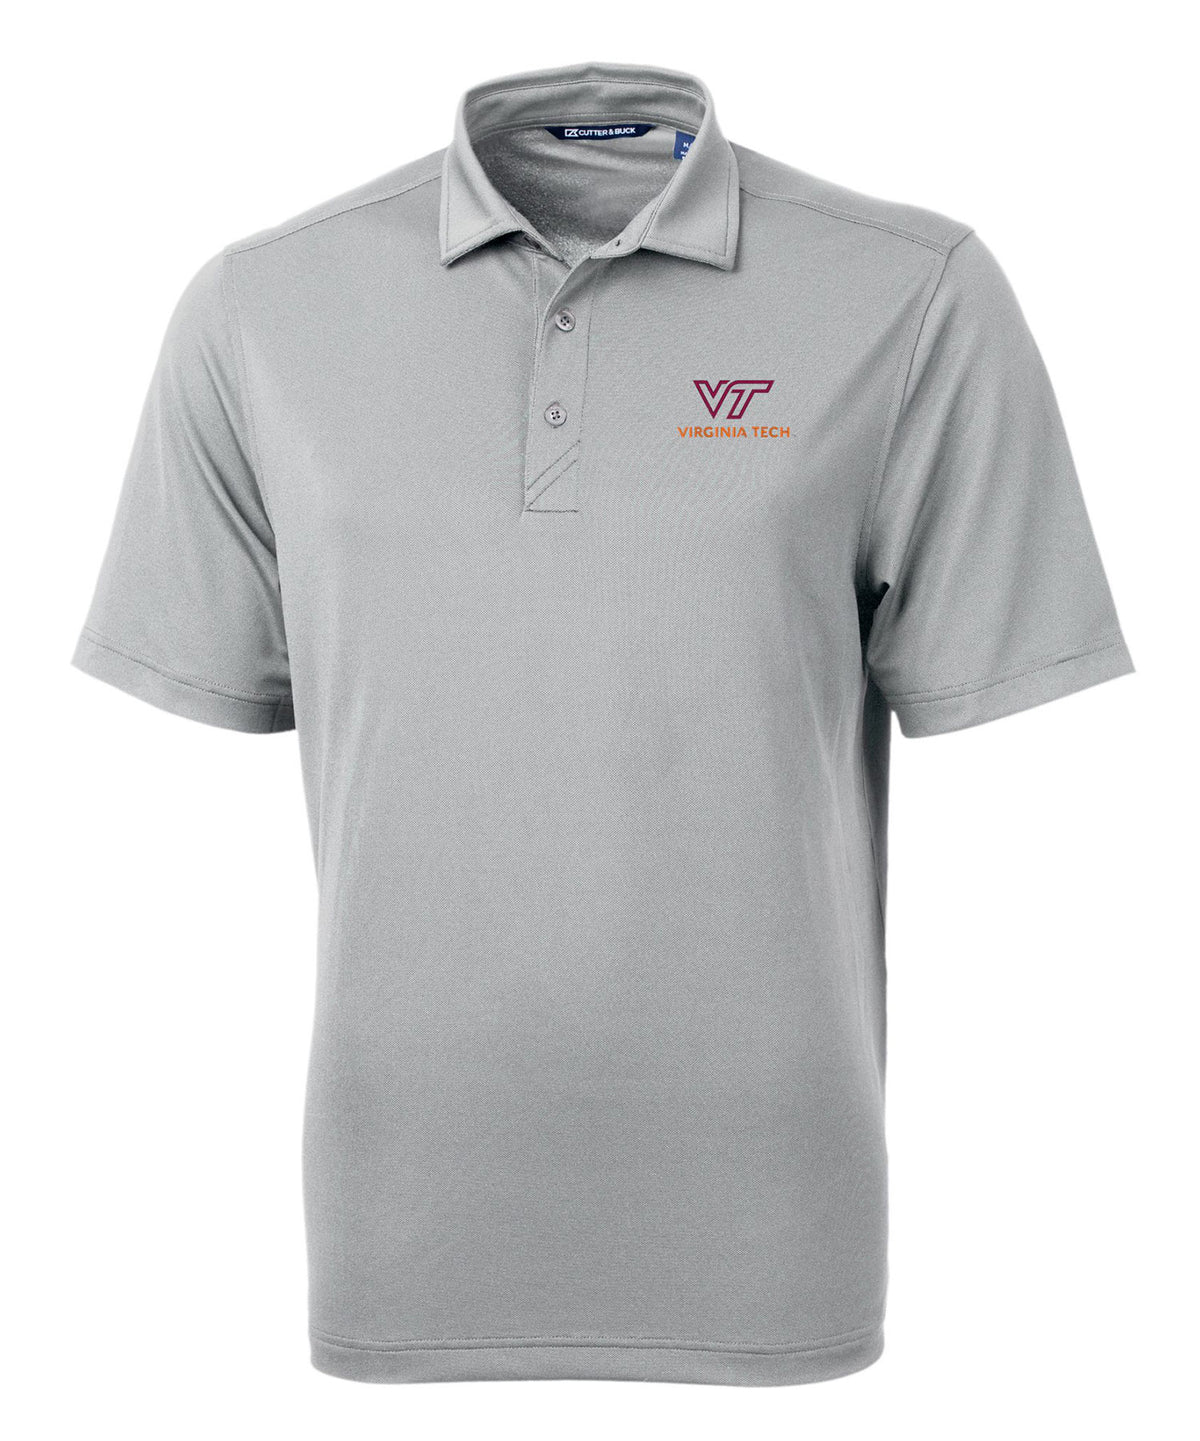 Cutter & Buck Virginia Tech Hokies Short Sleeve Polo Knit Shirt, Men's Big & Tall